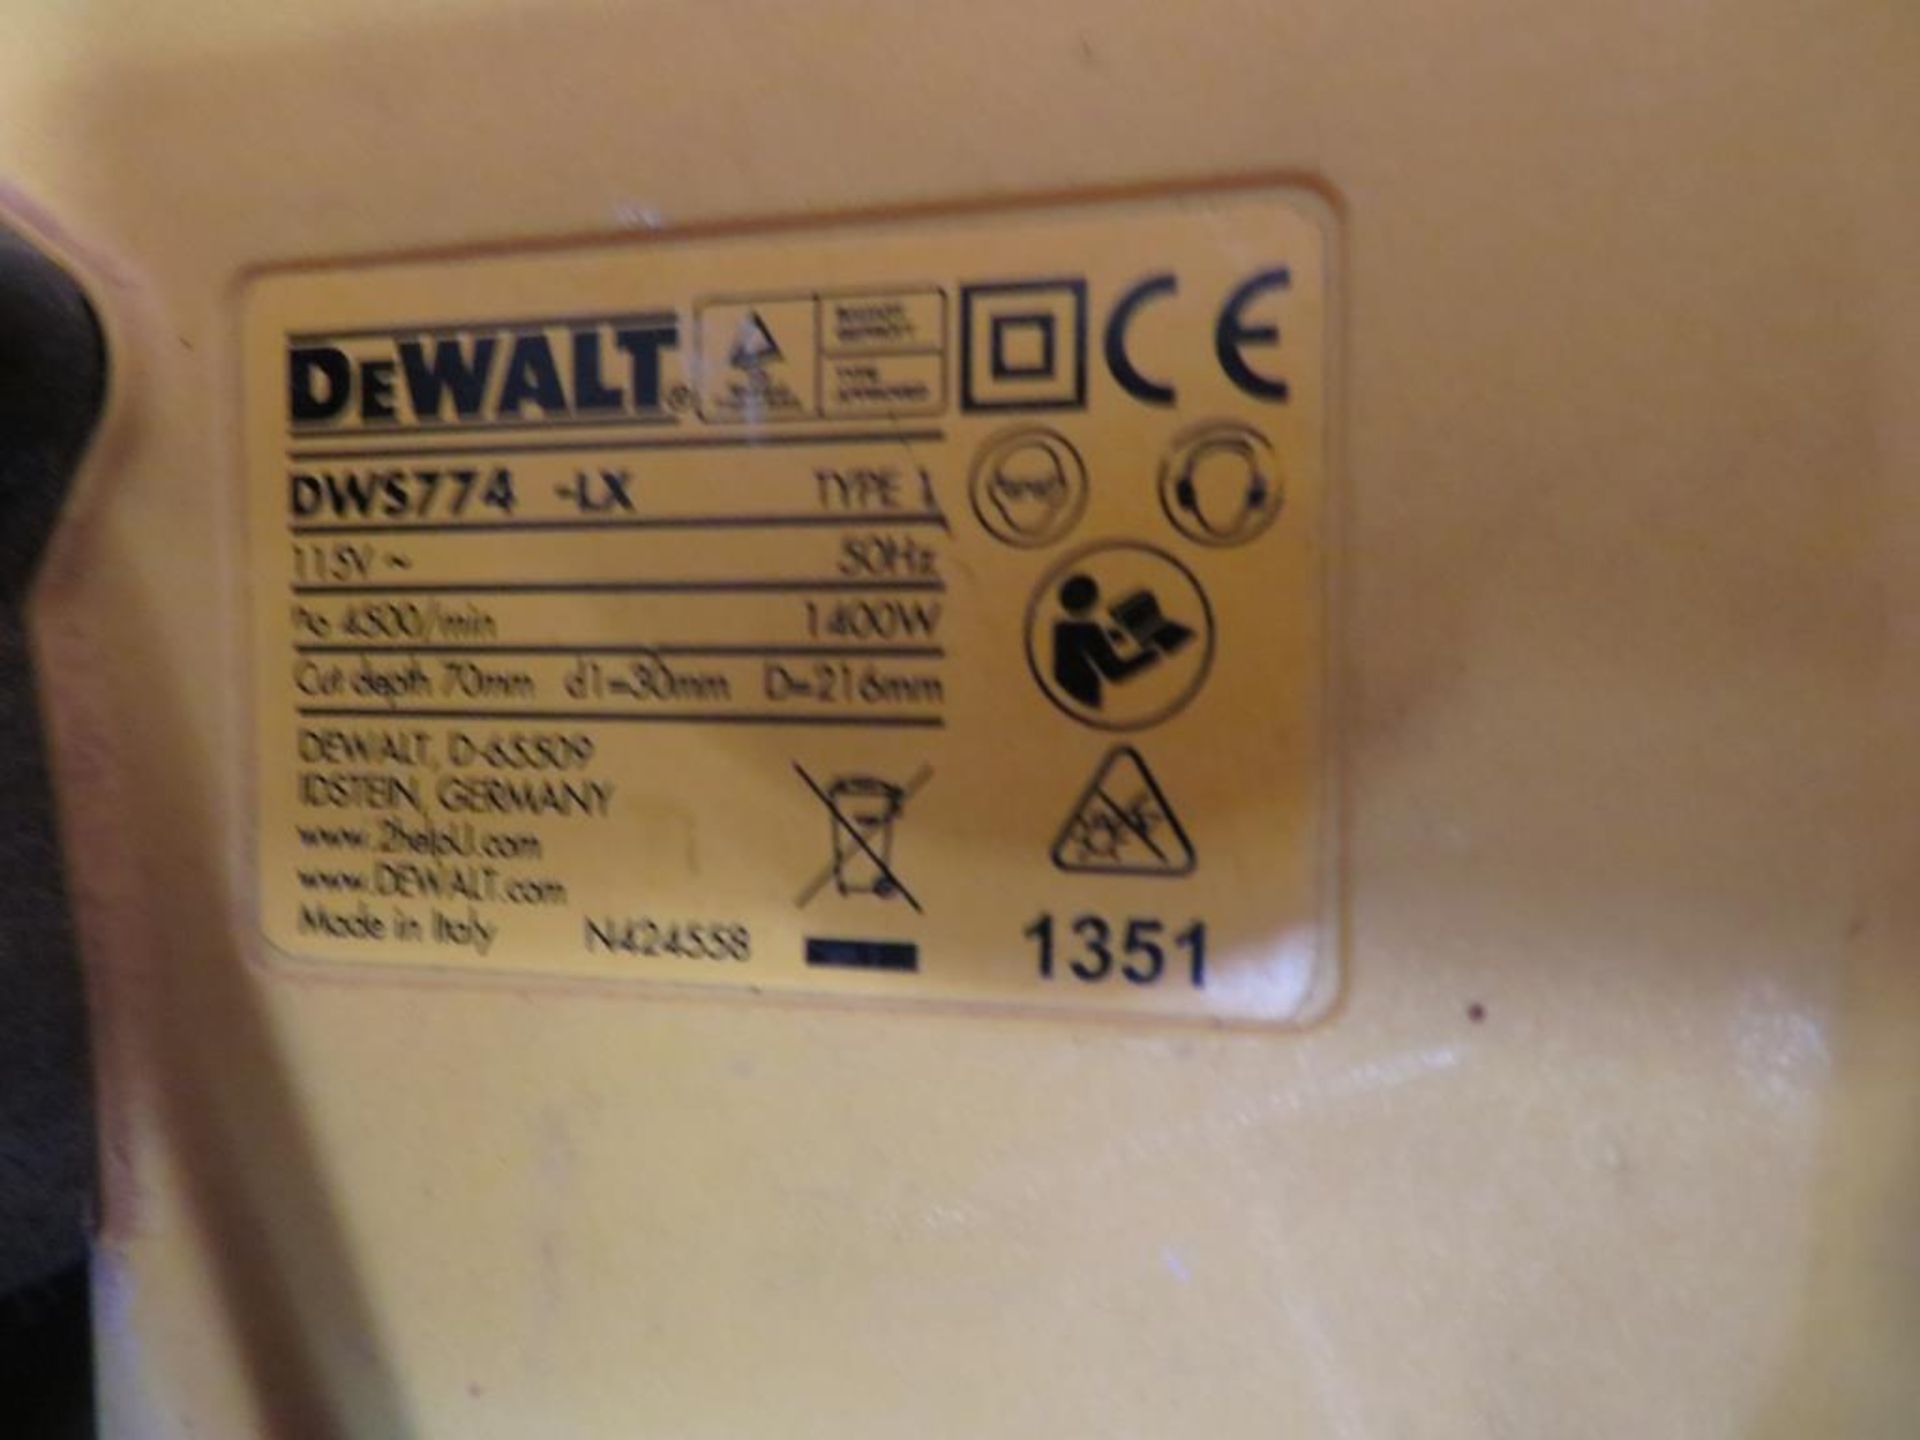 DeWalt DWS774-LX Cross Cut Saw - Image 2 of 4